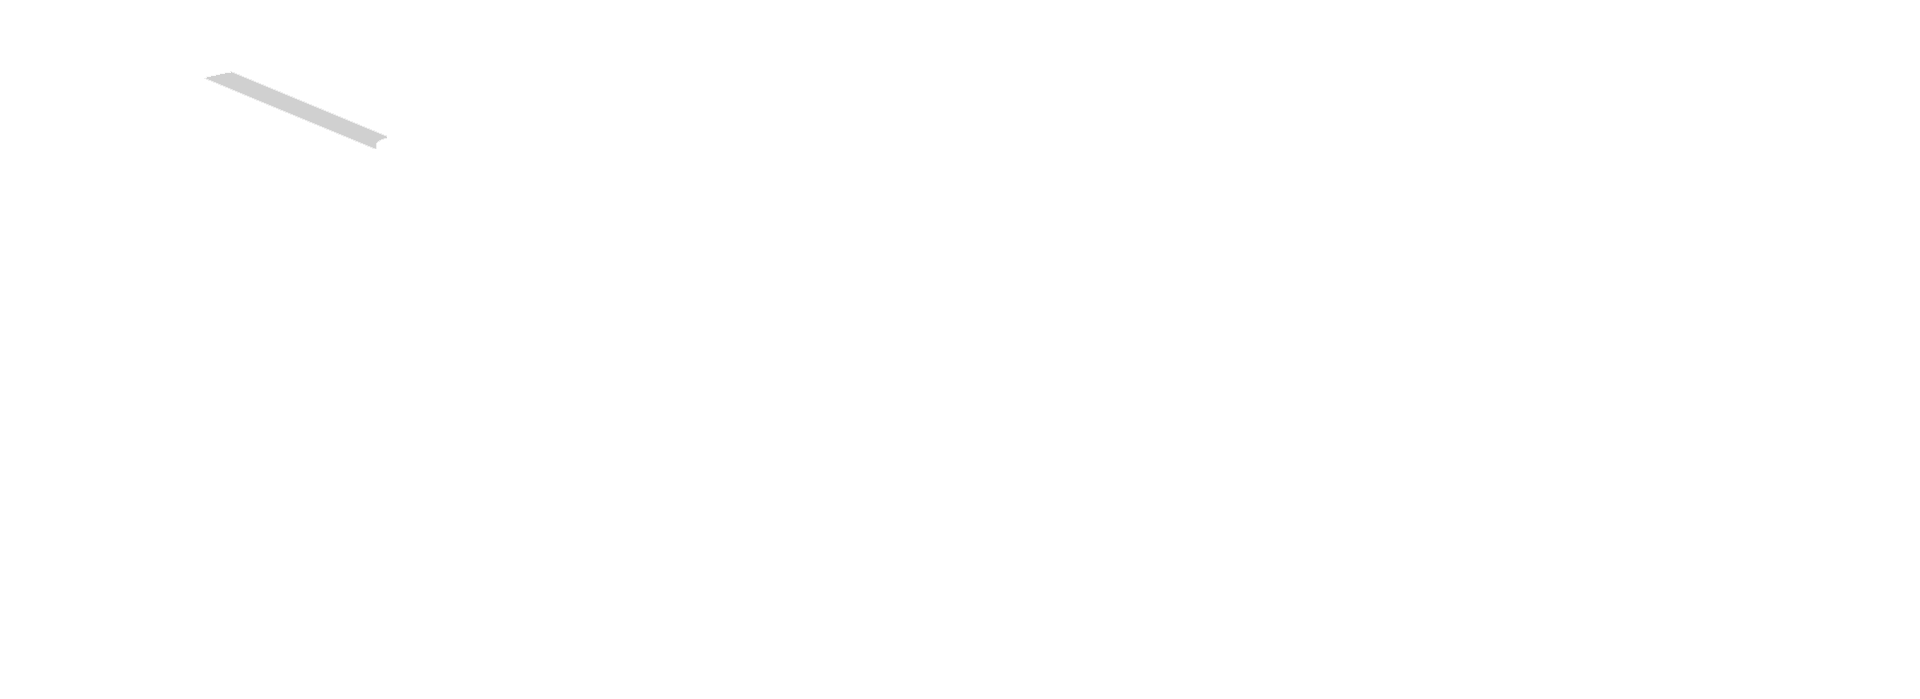 Find us on StuRents